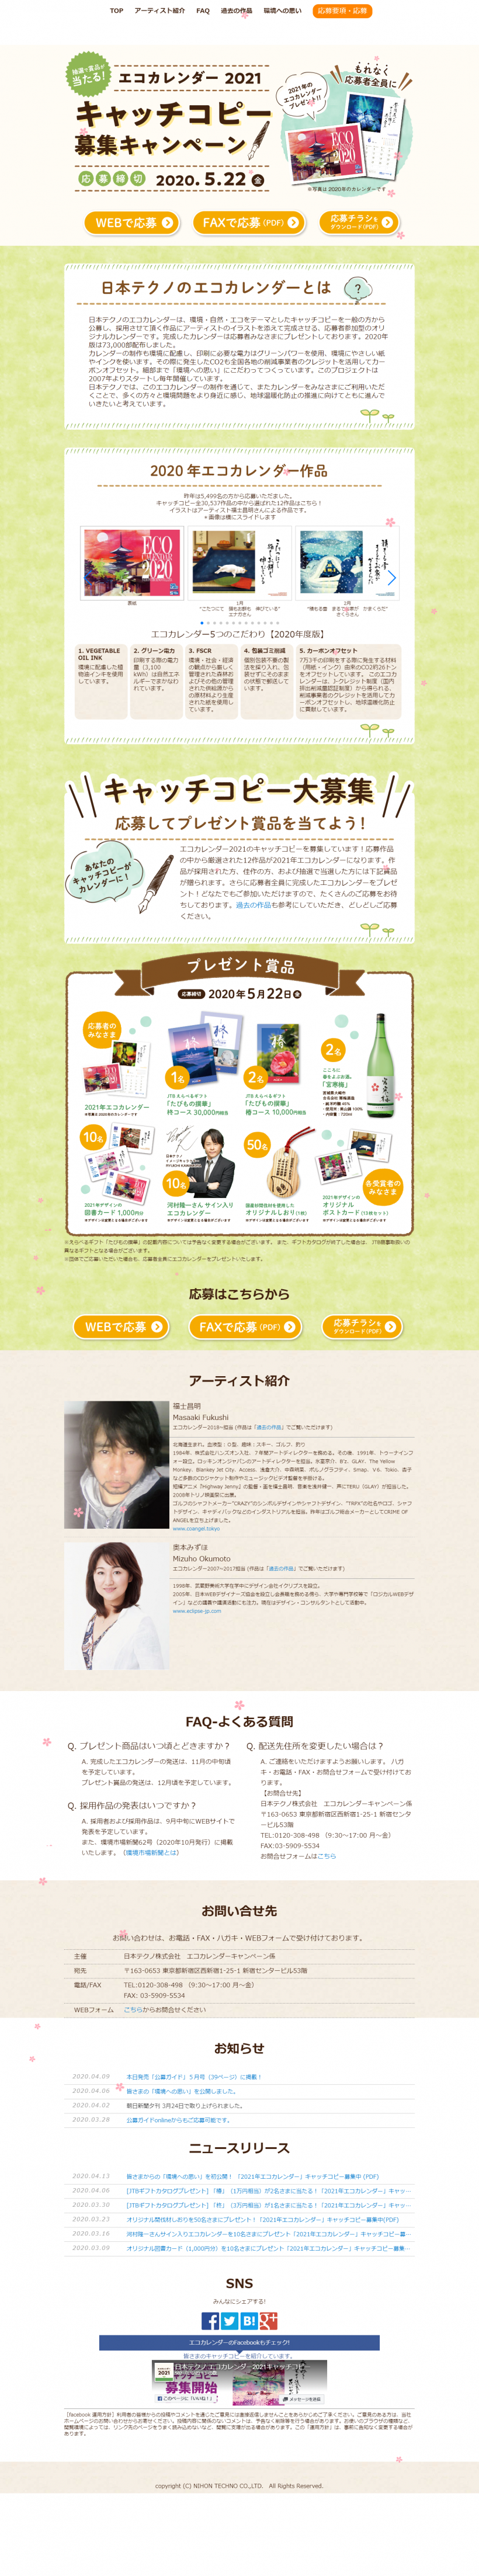 日本テクノ株式会社 エコカレンダー21 キャッチコピー募集キャンペーン キャンなび Webキャンペーンまとめサイト